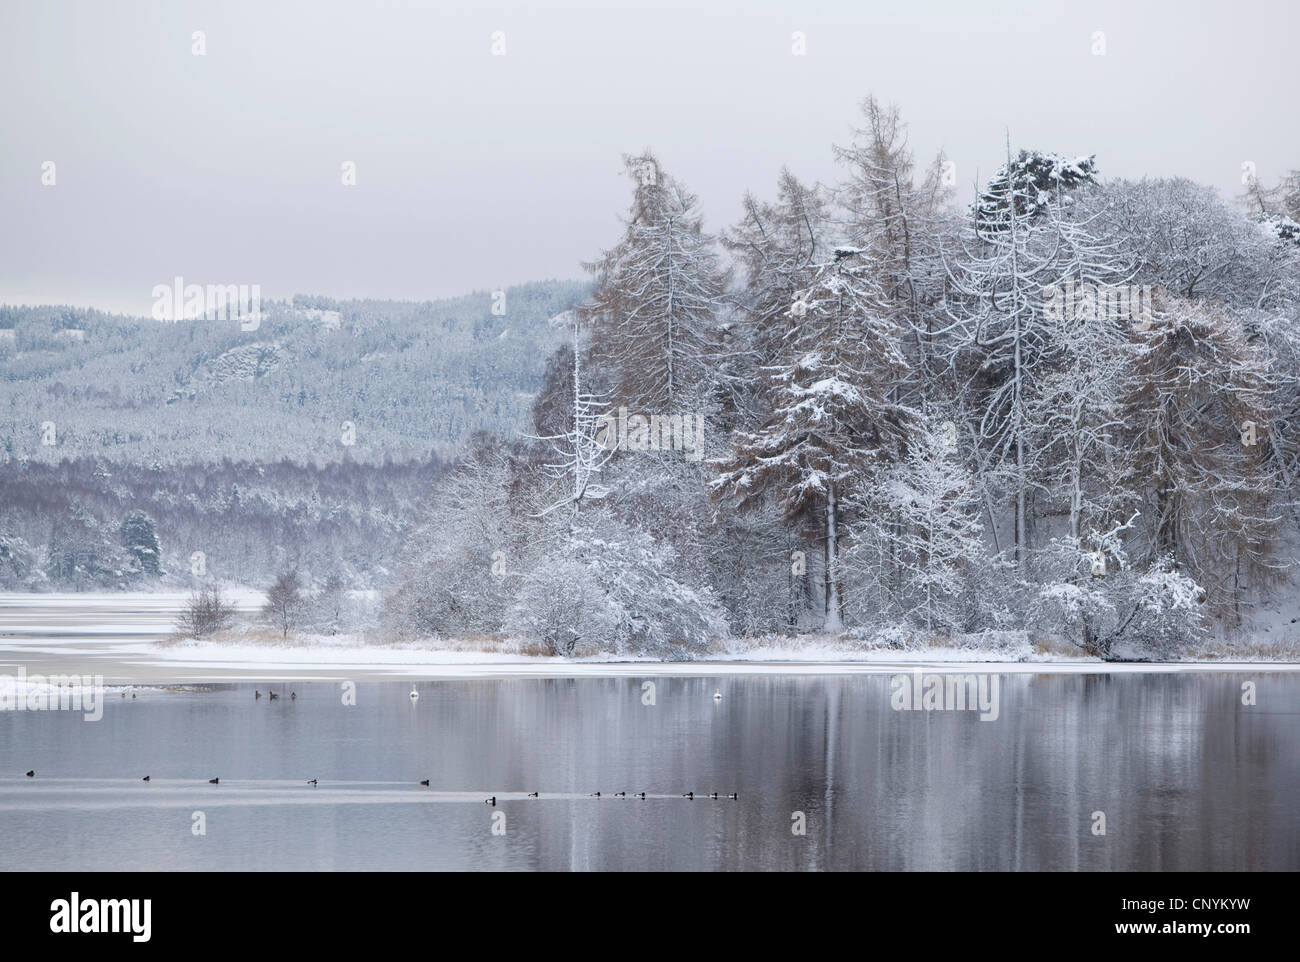 Loch Insh in inverno, Regno Unito, Scozia, Cairngorms National Park Foto Stock